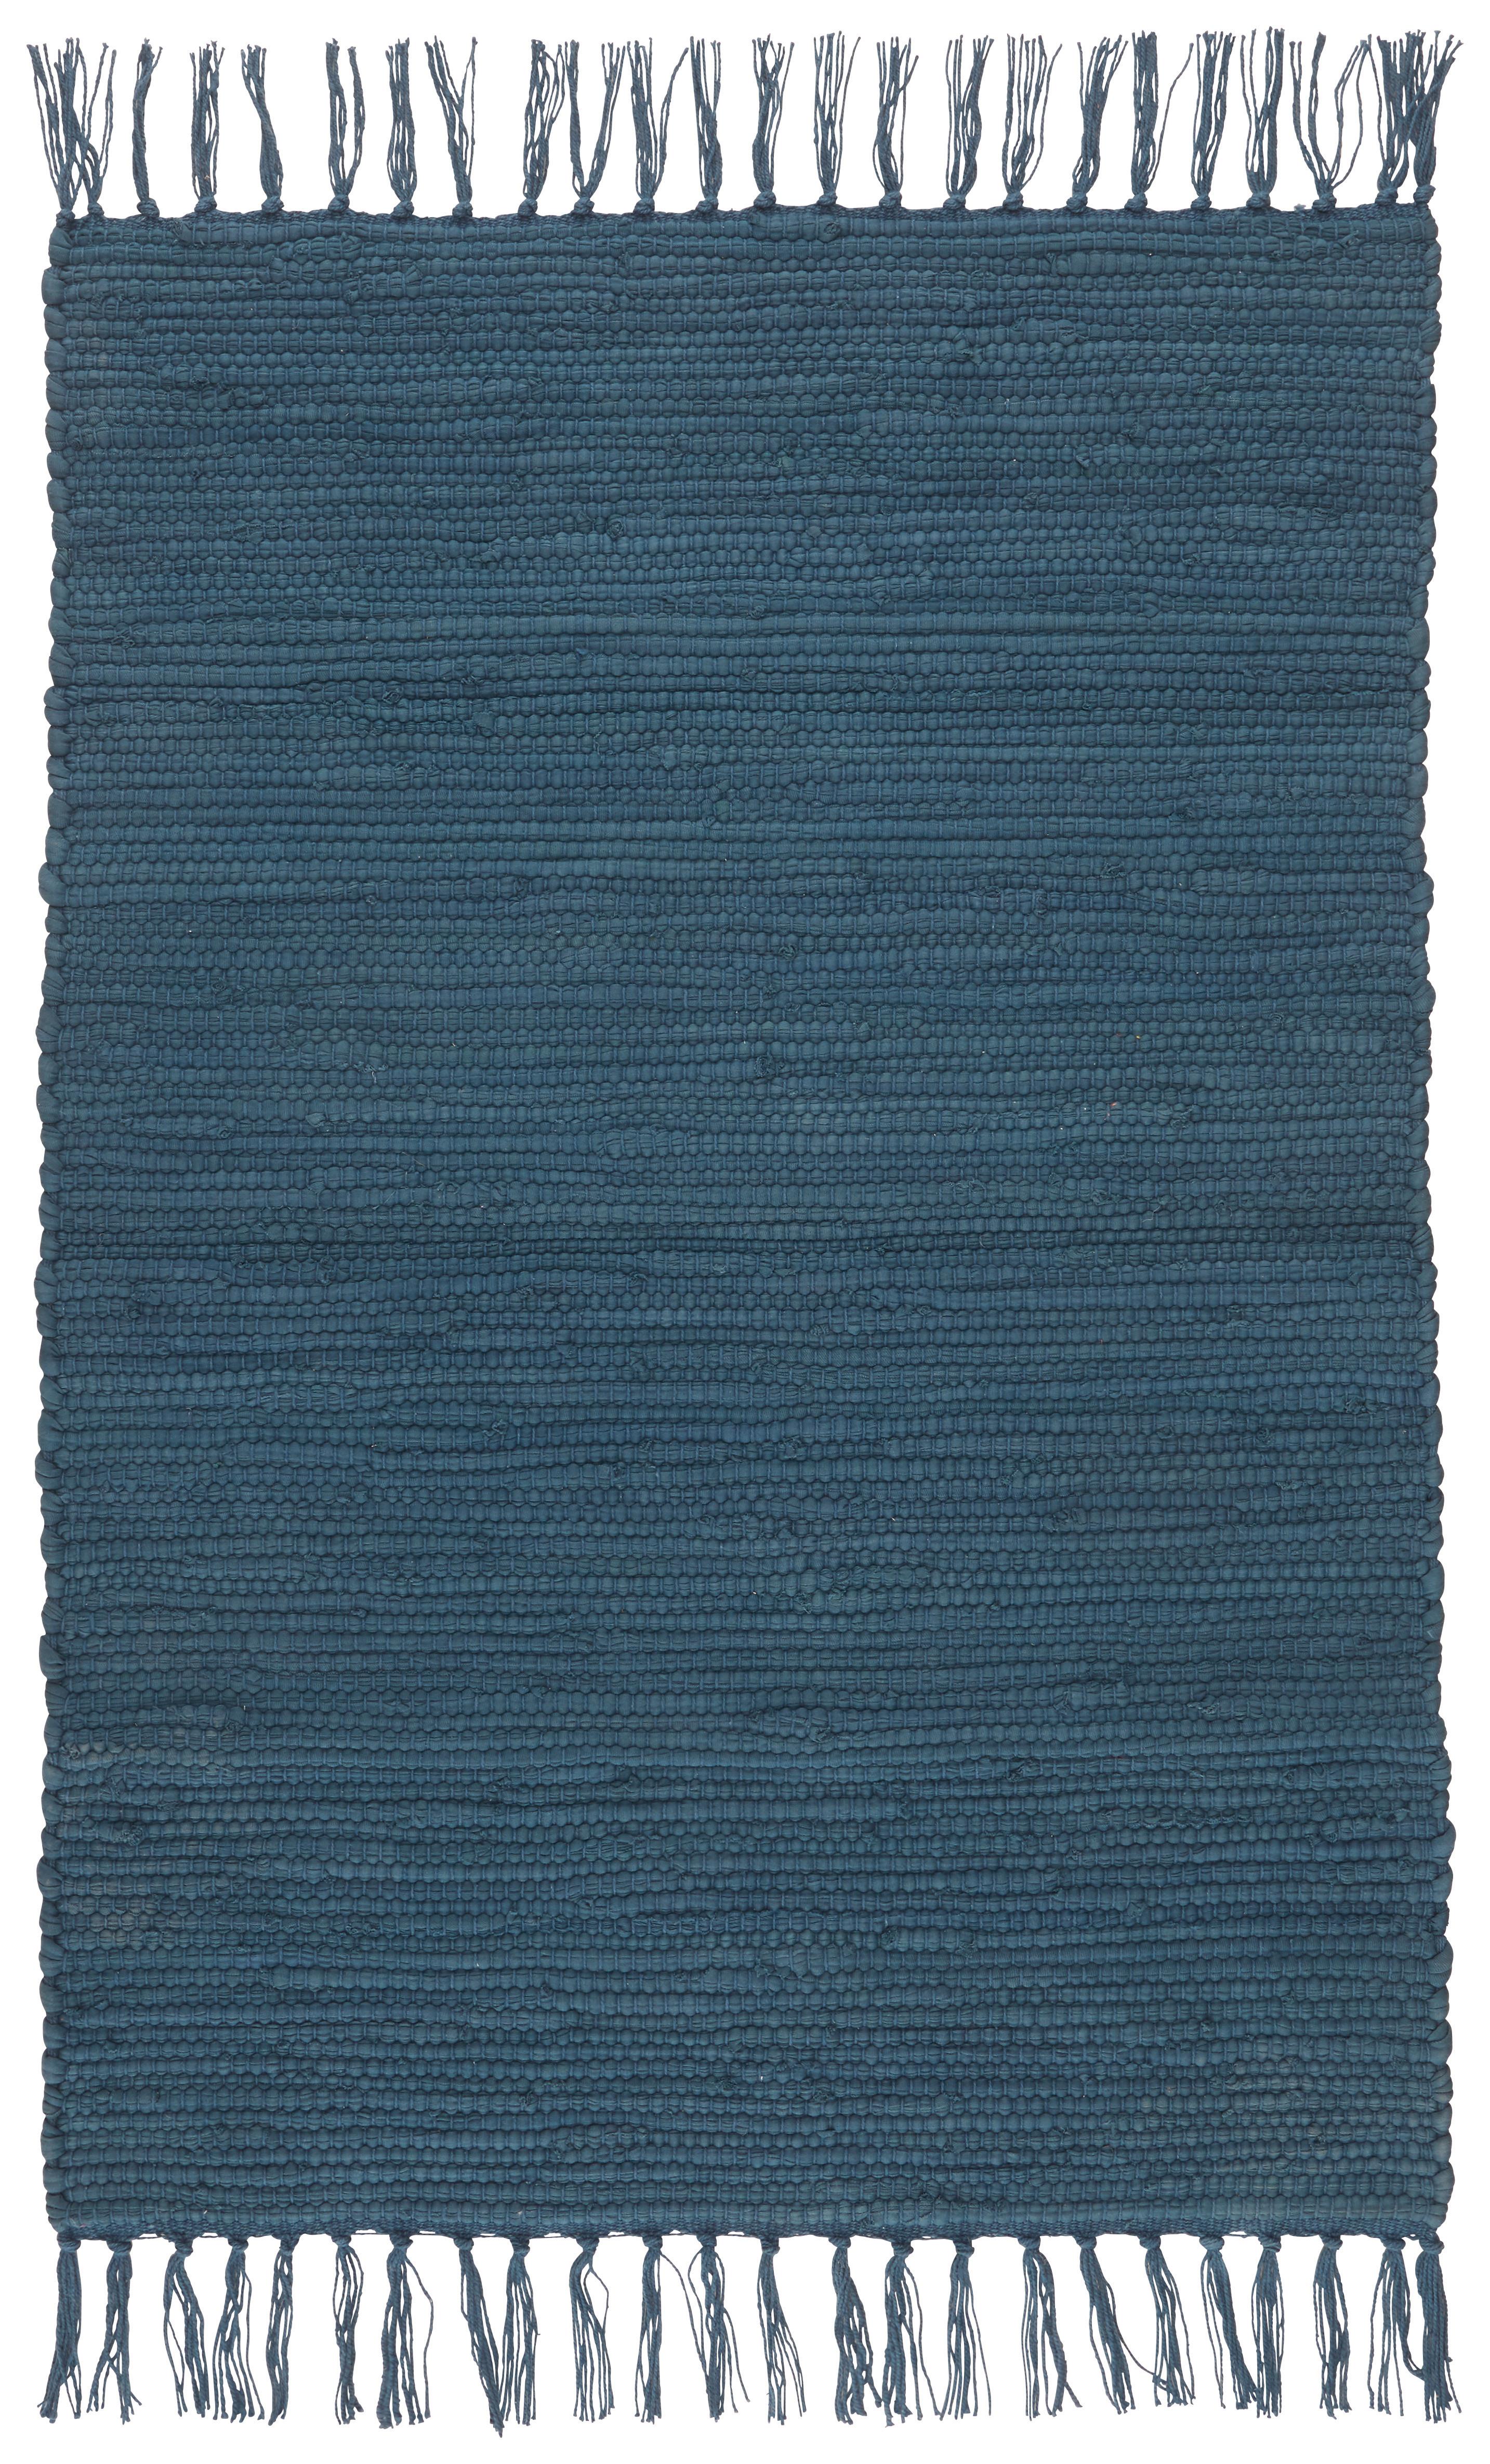 Plátaný Koberec Julia 1, 60/90cm, Tm. Modrá - tmavomodrá, Romantický / Vidiecky, textil (60/90cm) - Modern Living